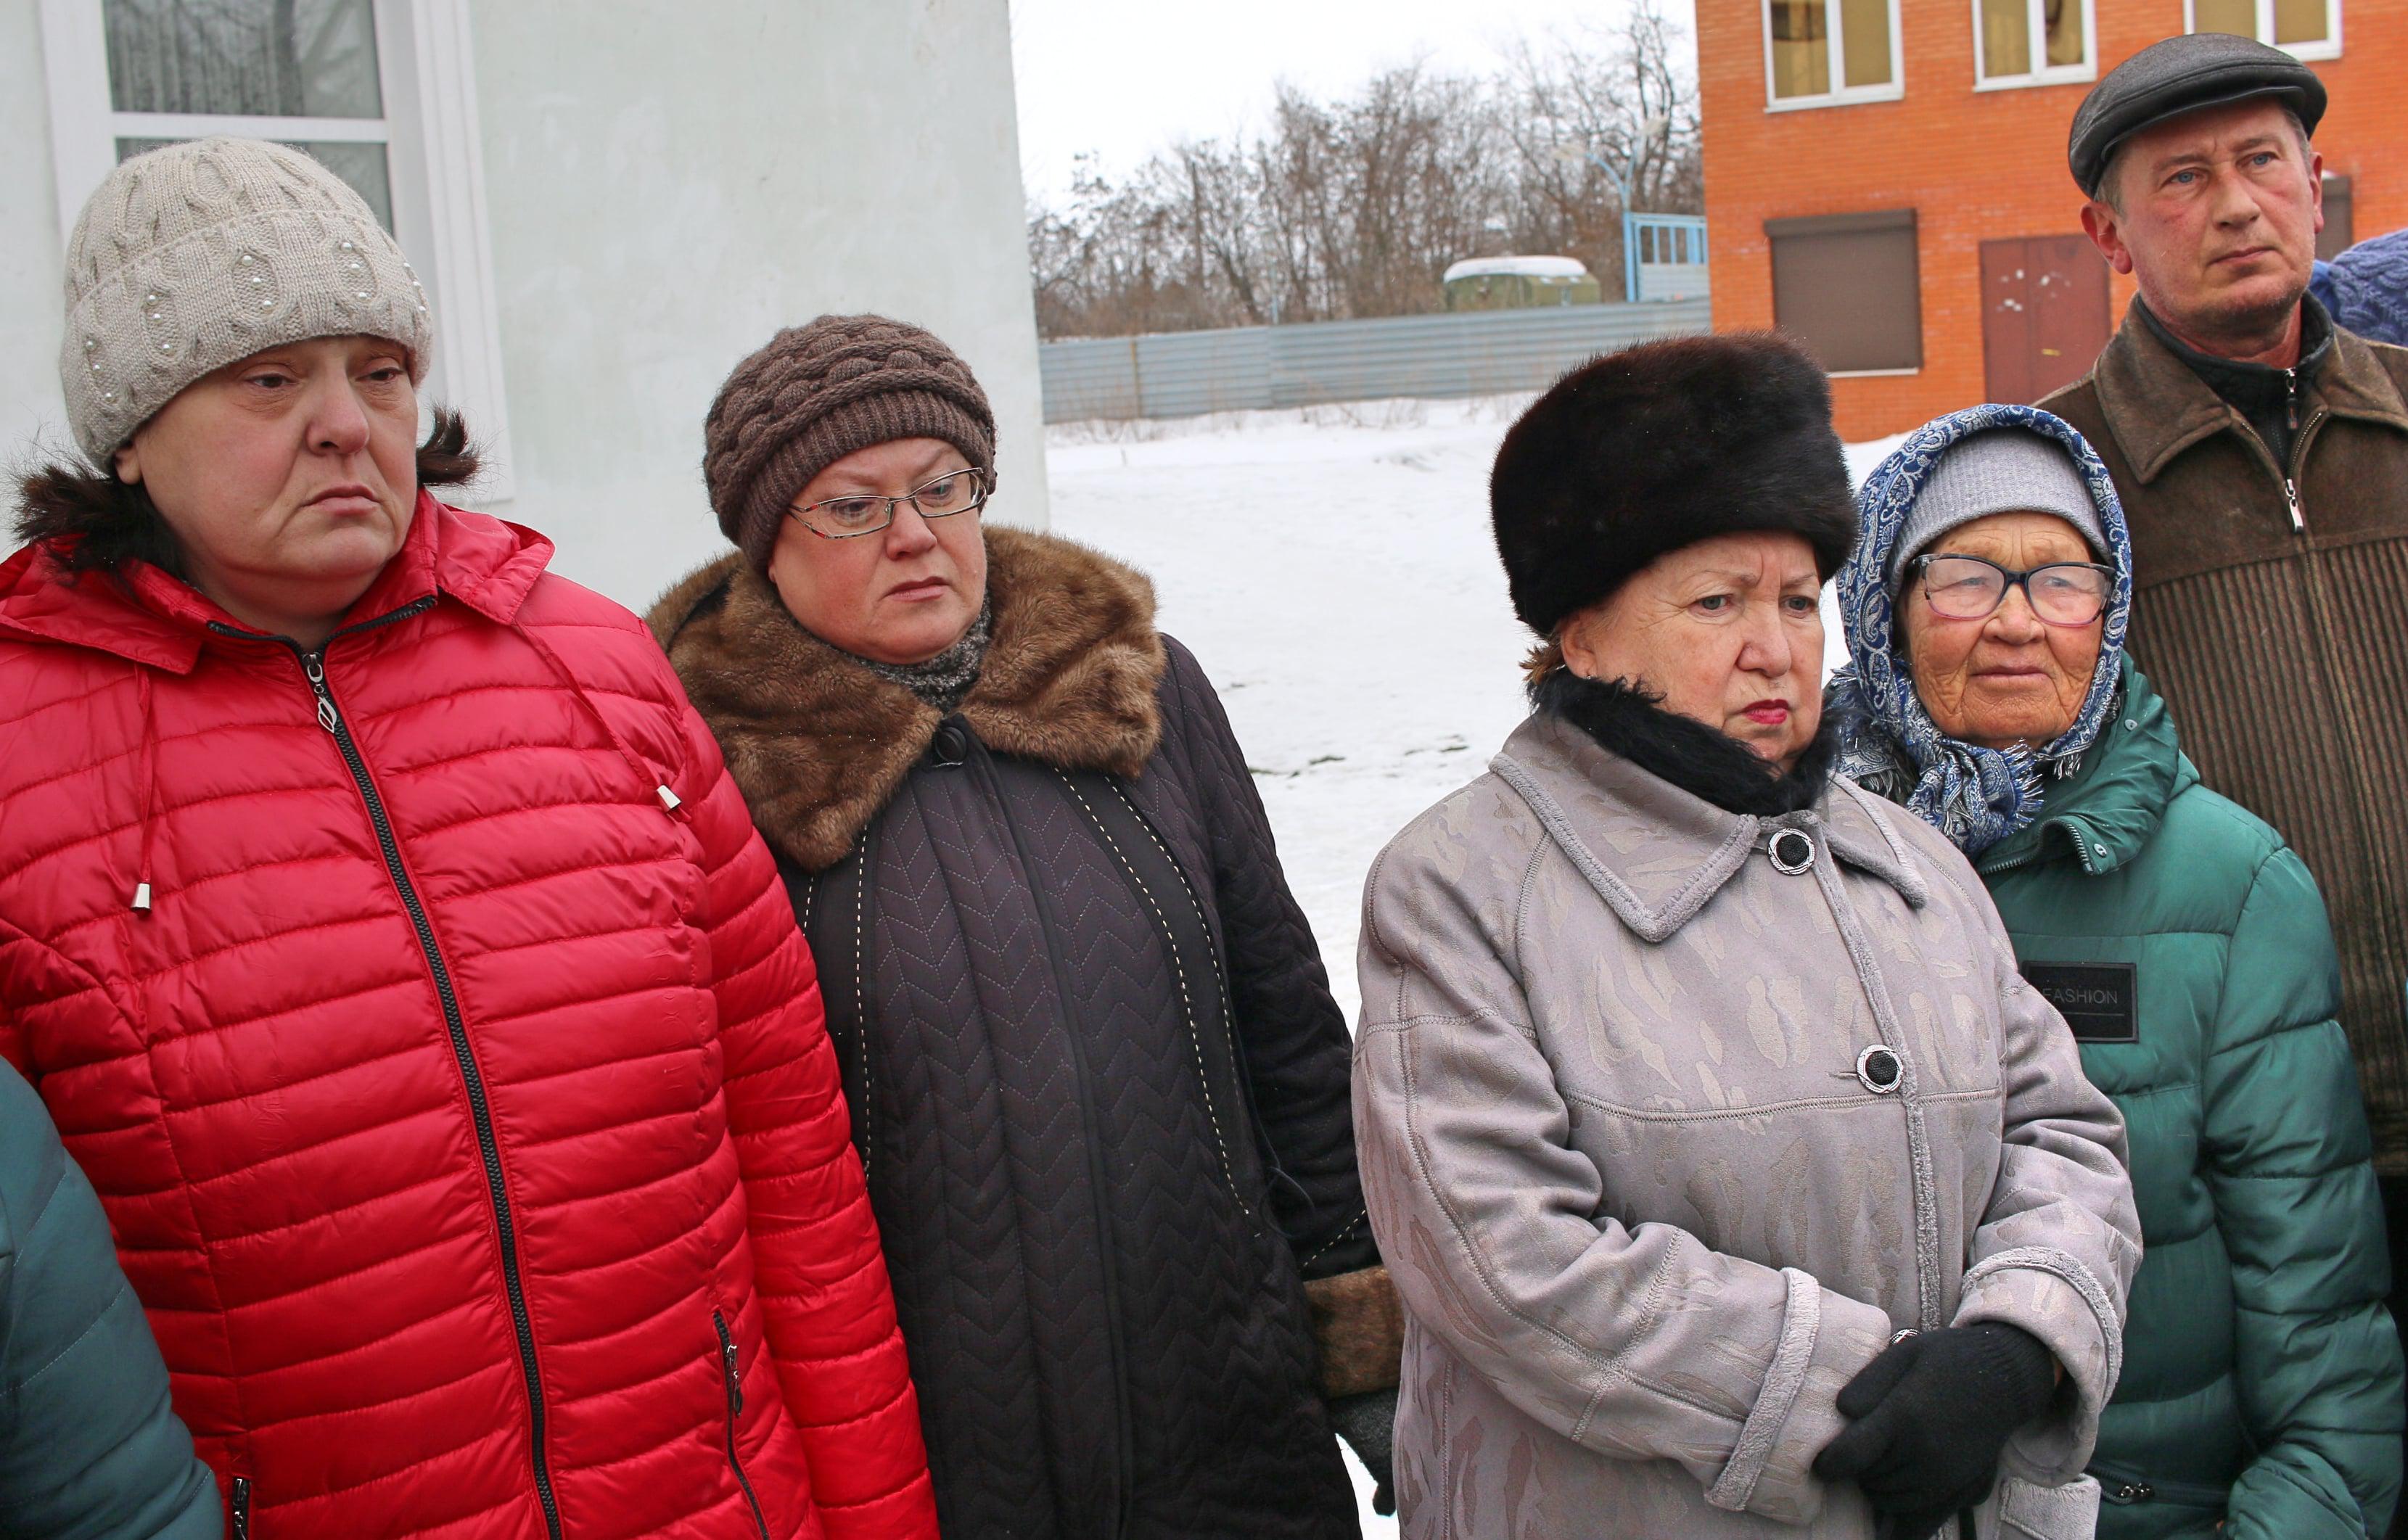 Участники пикета в Гуково 9 февраля 2019 года. Фото Вячеслава Прудникова для "Кавказского узла"